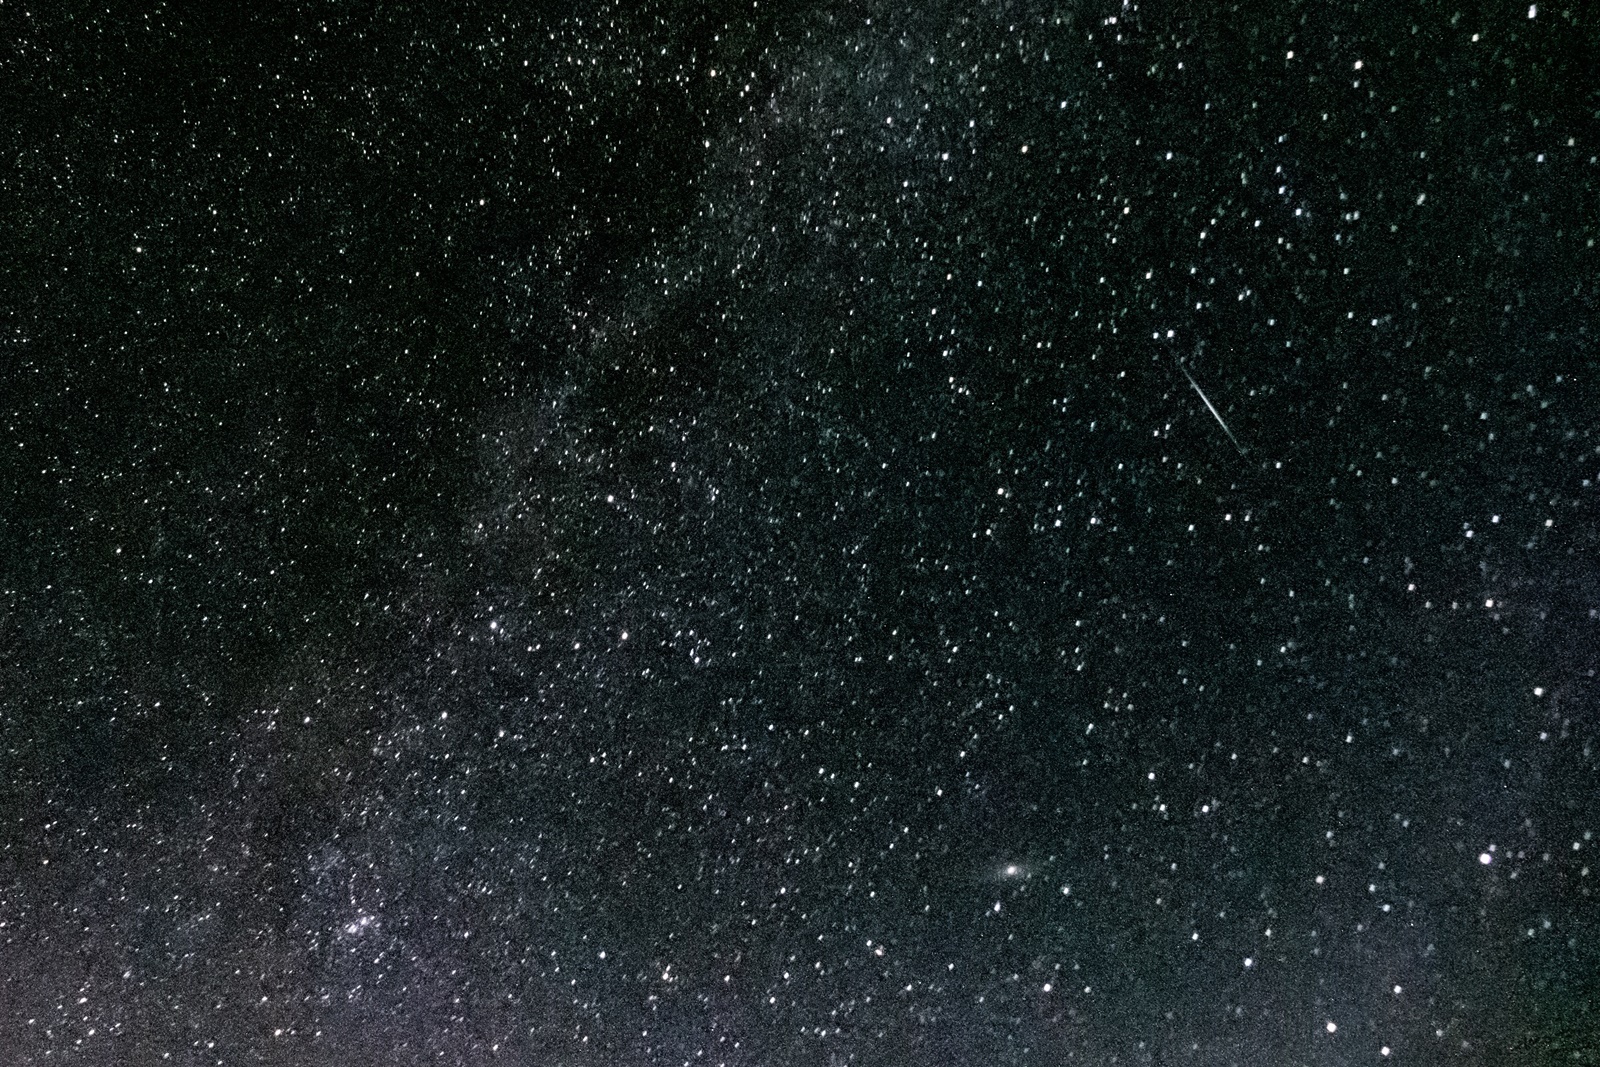 Csillagles elnevezéssel éjszakai csillagnézésre várja az érdeklődőket a Zsuzsi Erdei Vasút (képek forrása: Zsuzsi Erdei Vasút)